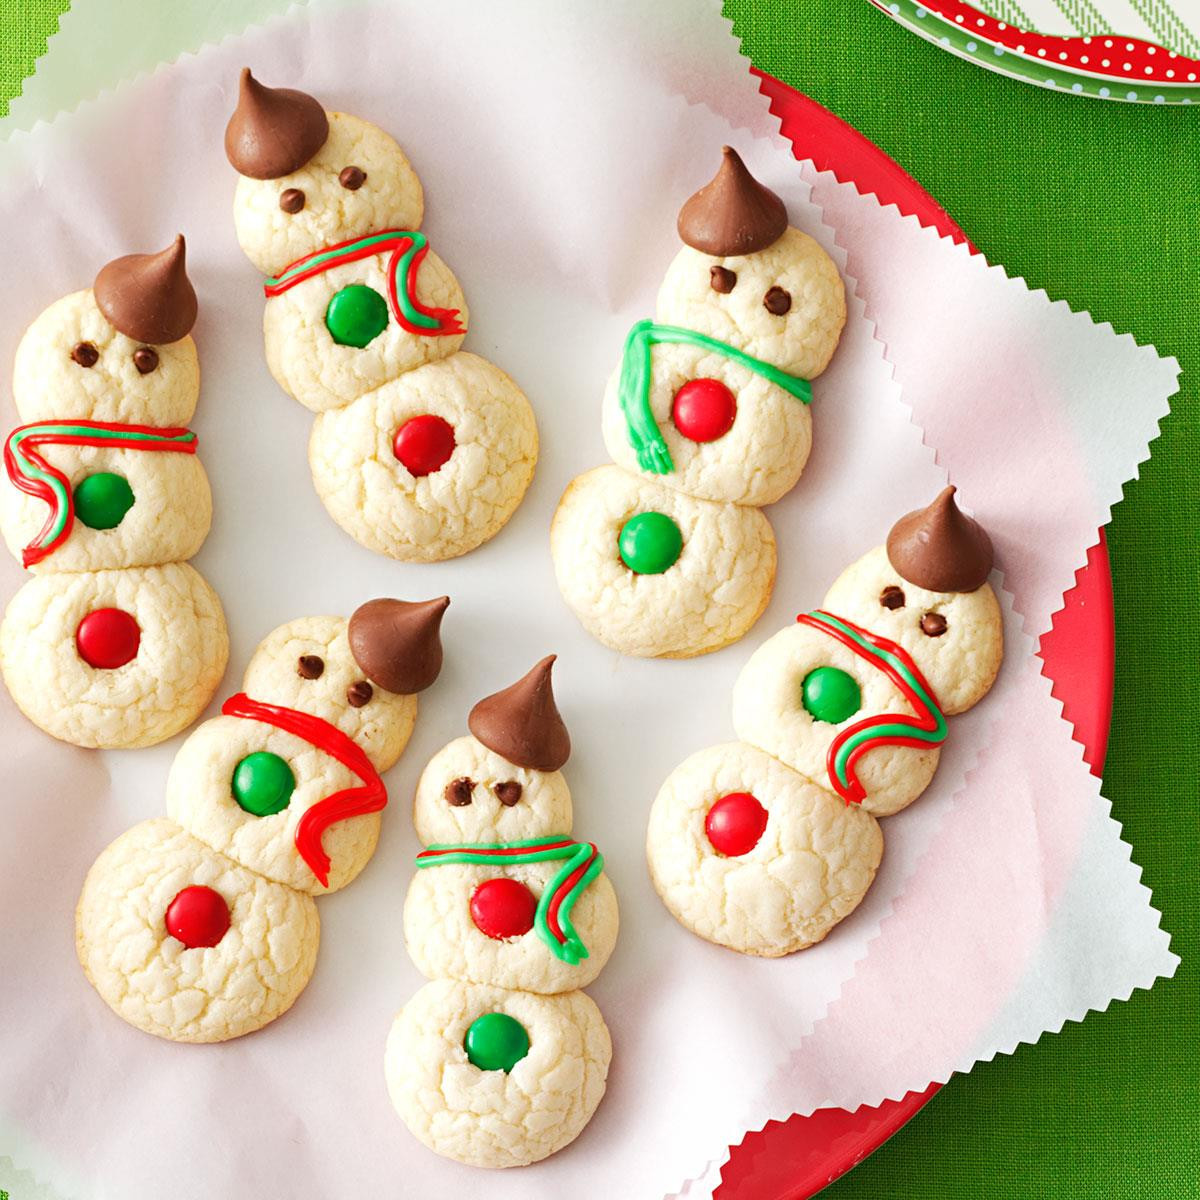 Cute Christmas Baking Ideas
 Snowman Cookies Recipe